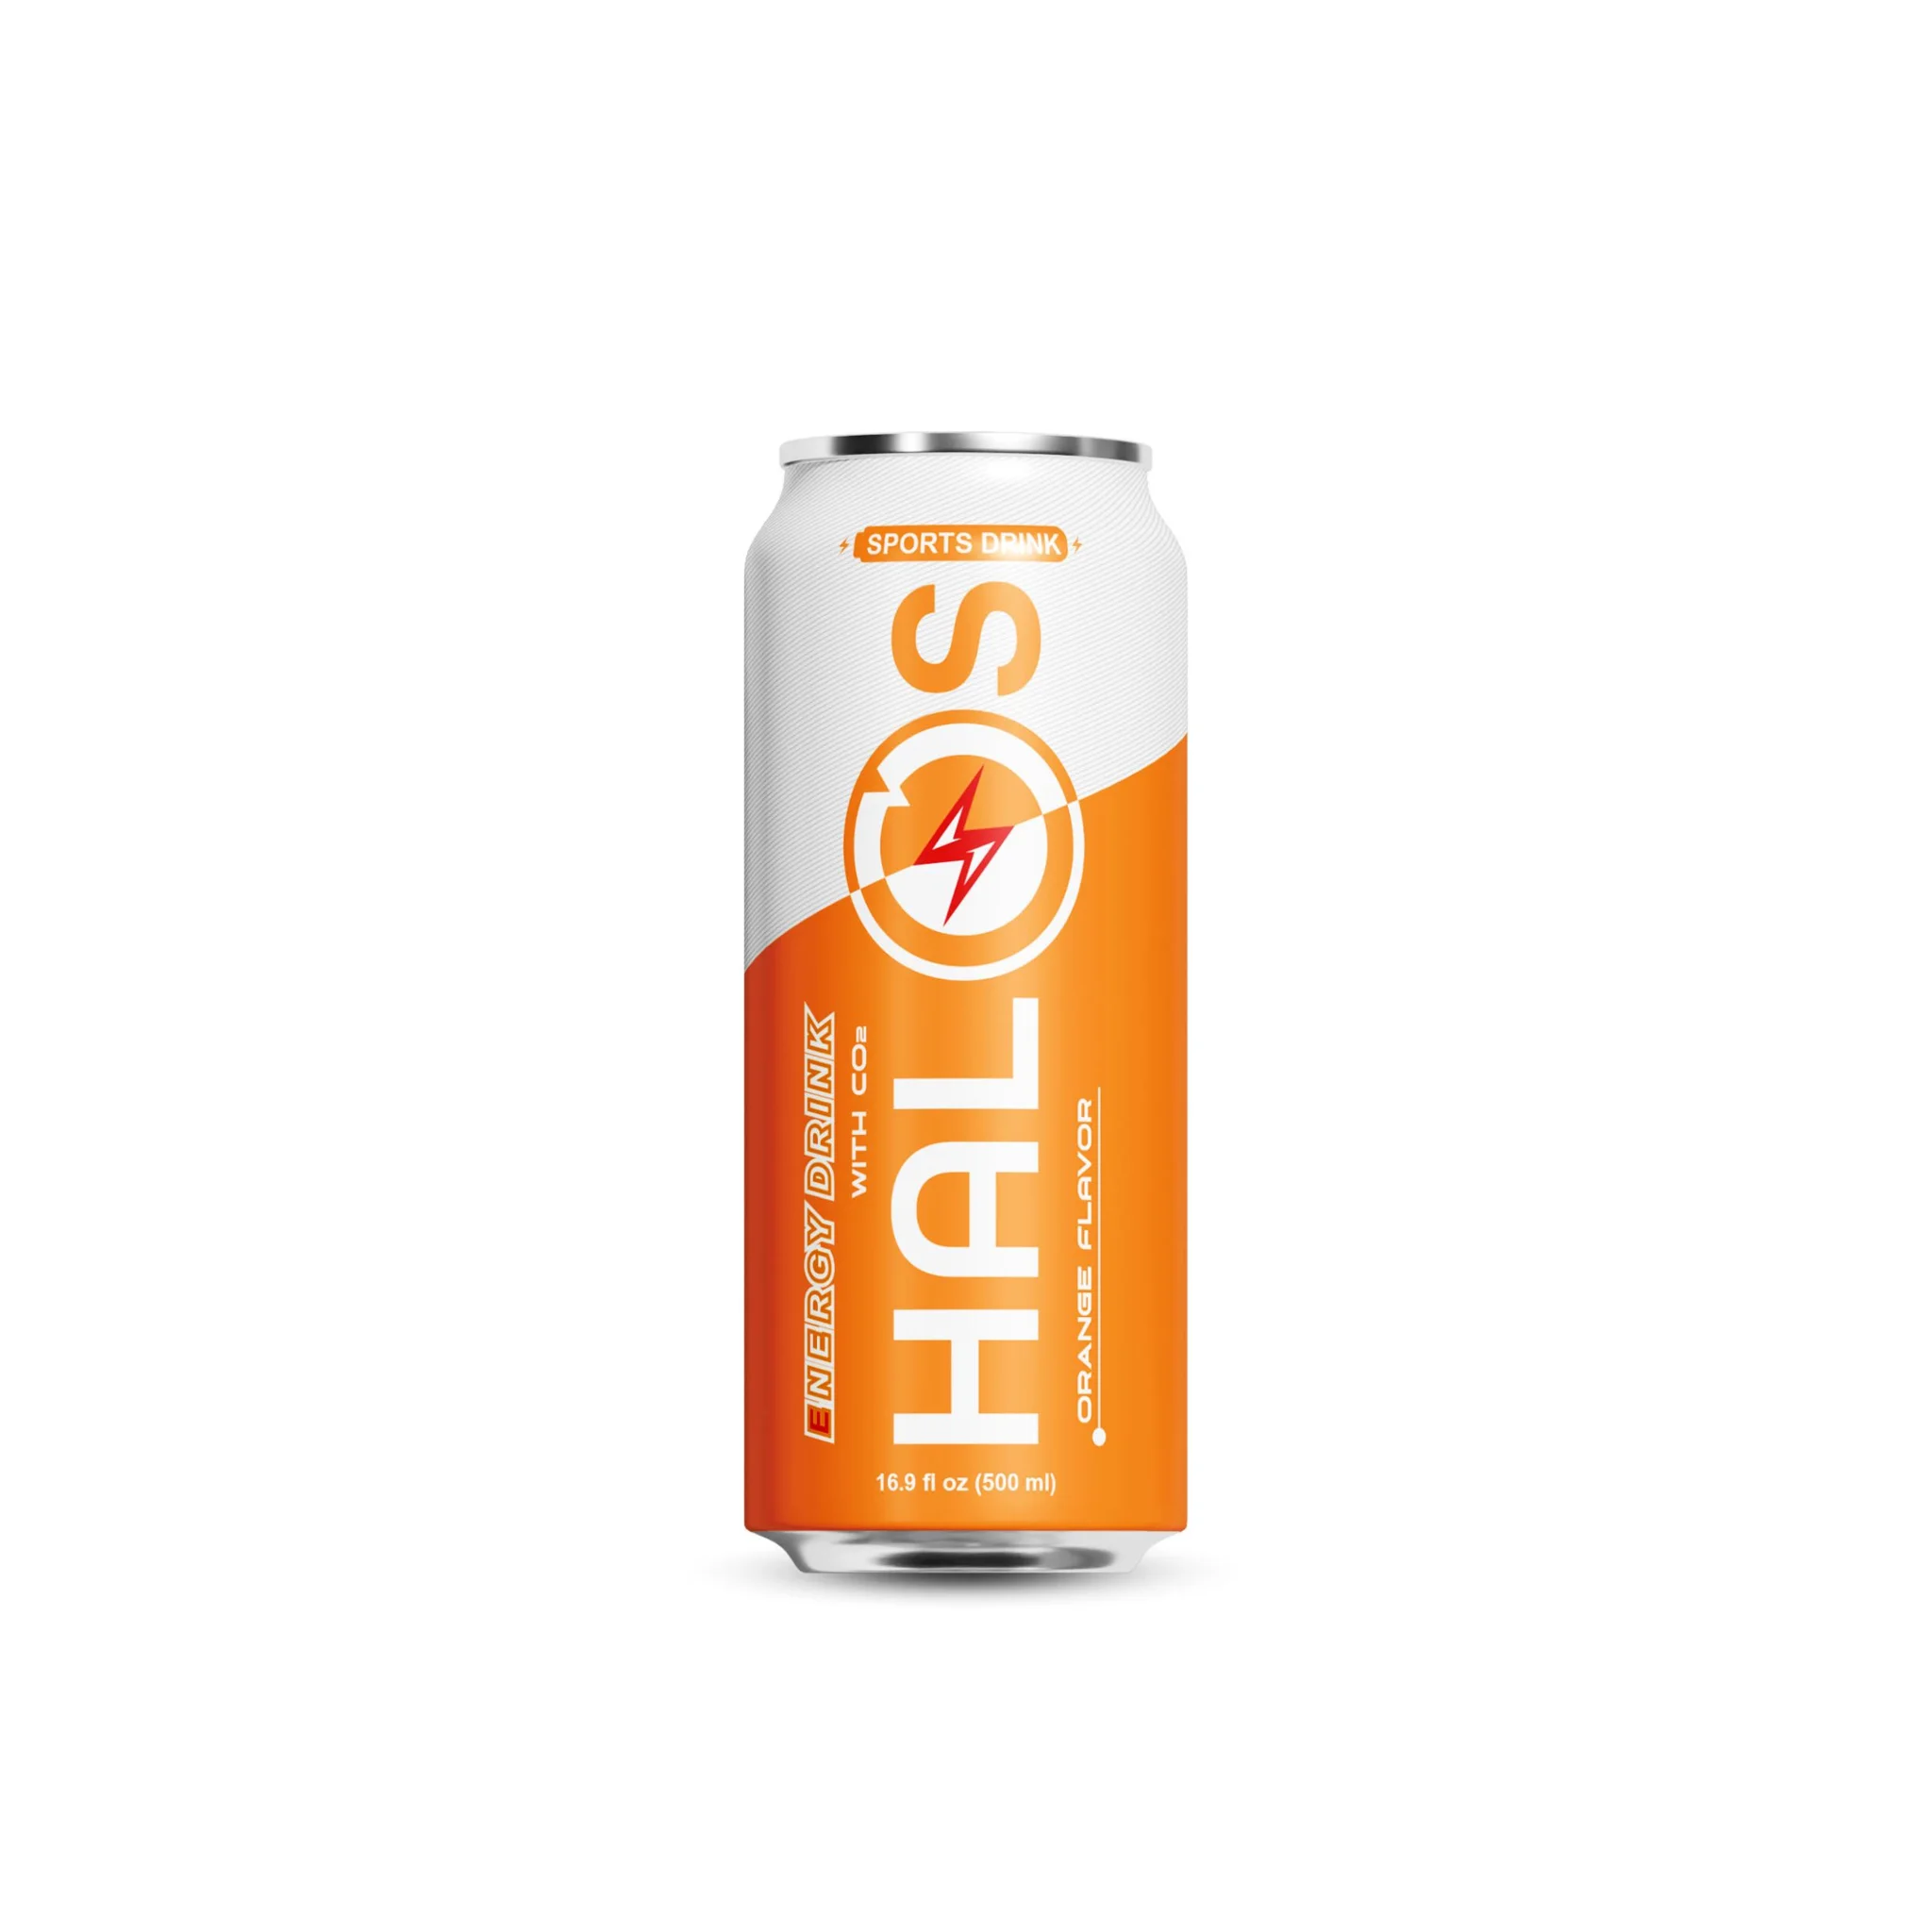 Halos/OEM Energy Drink Pineapple Flavor in 330ml Can 